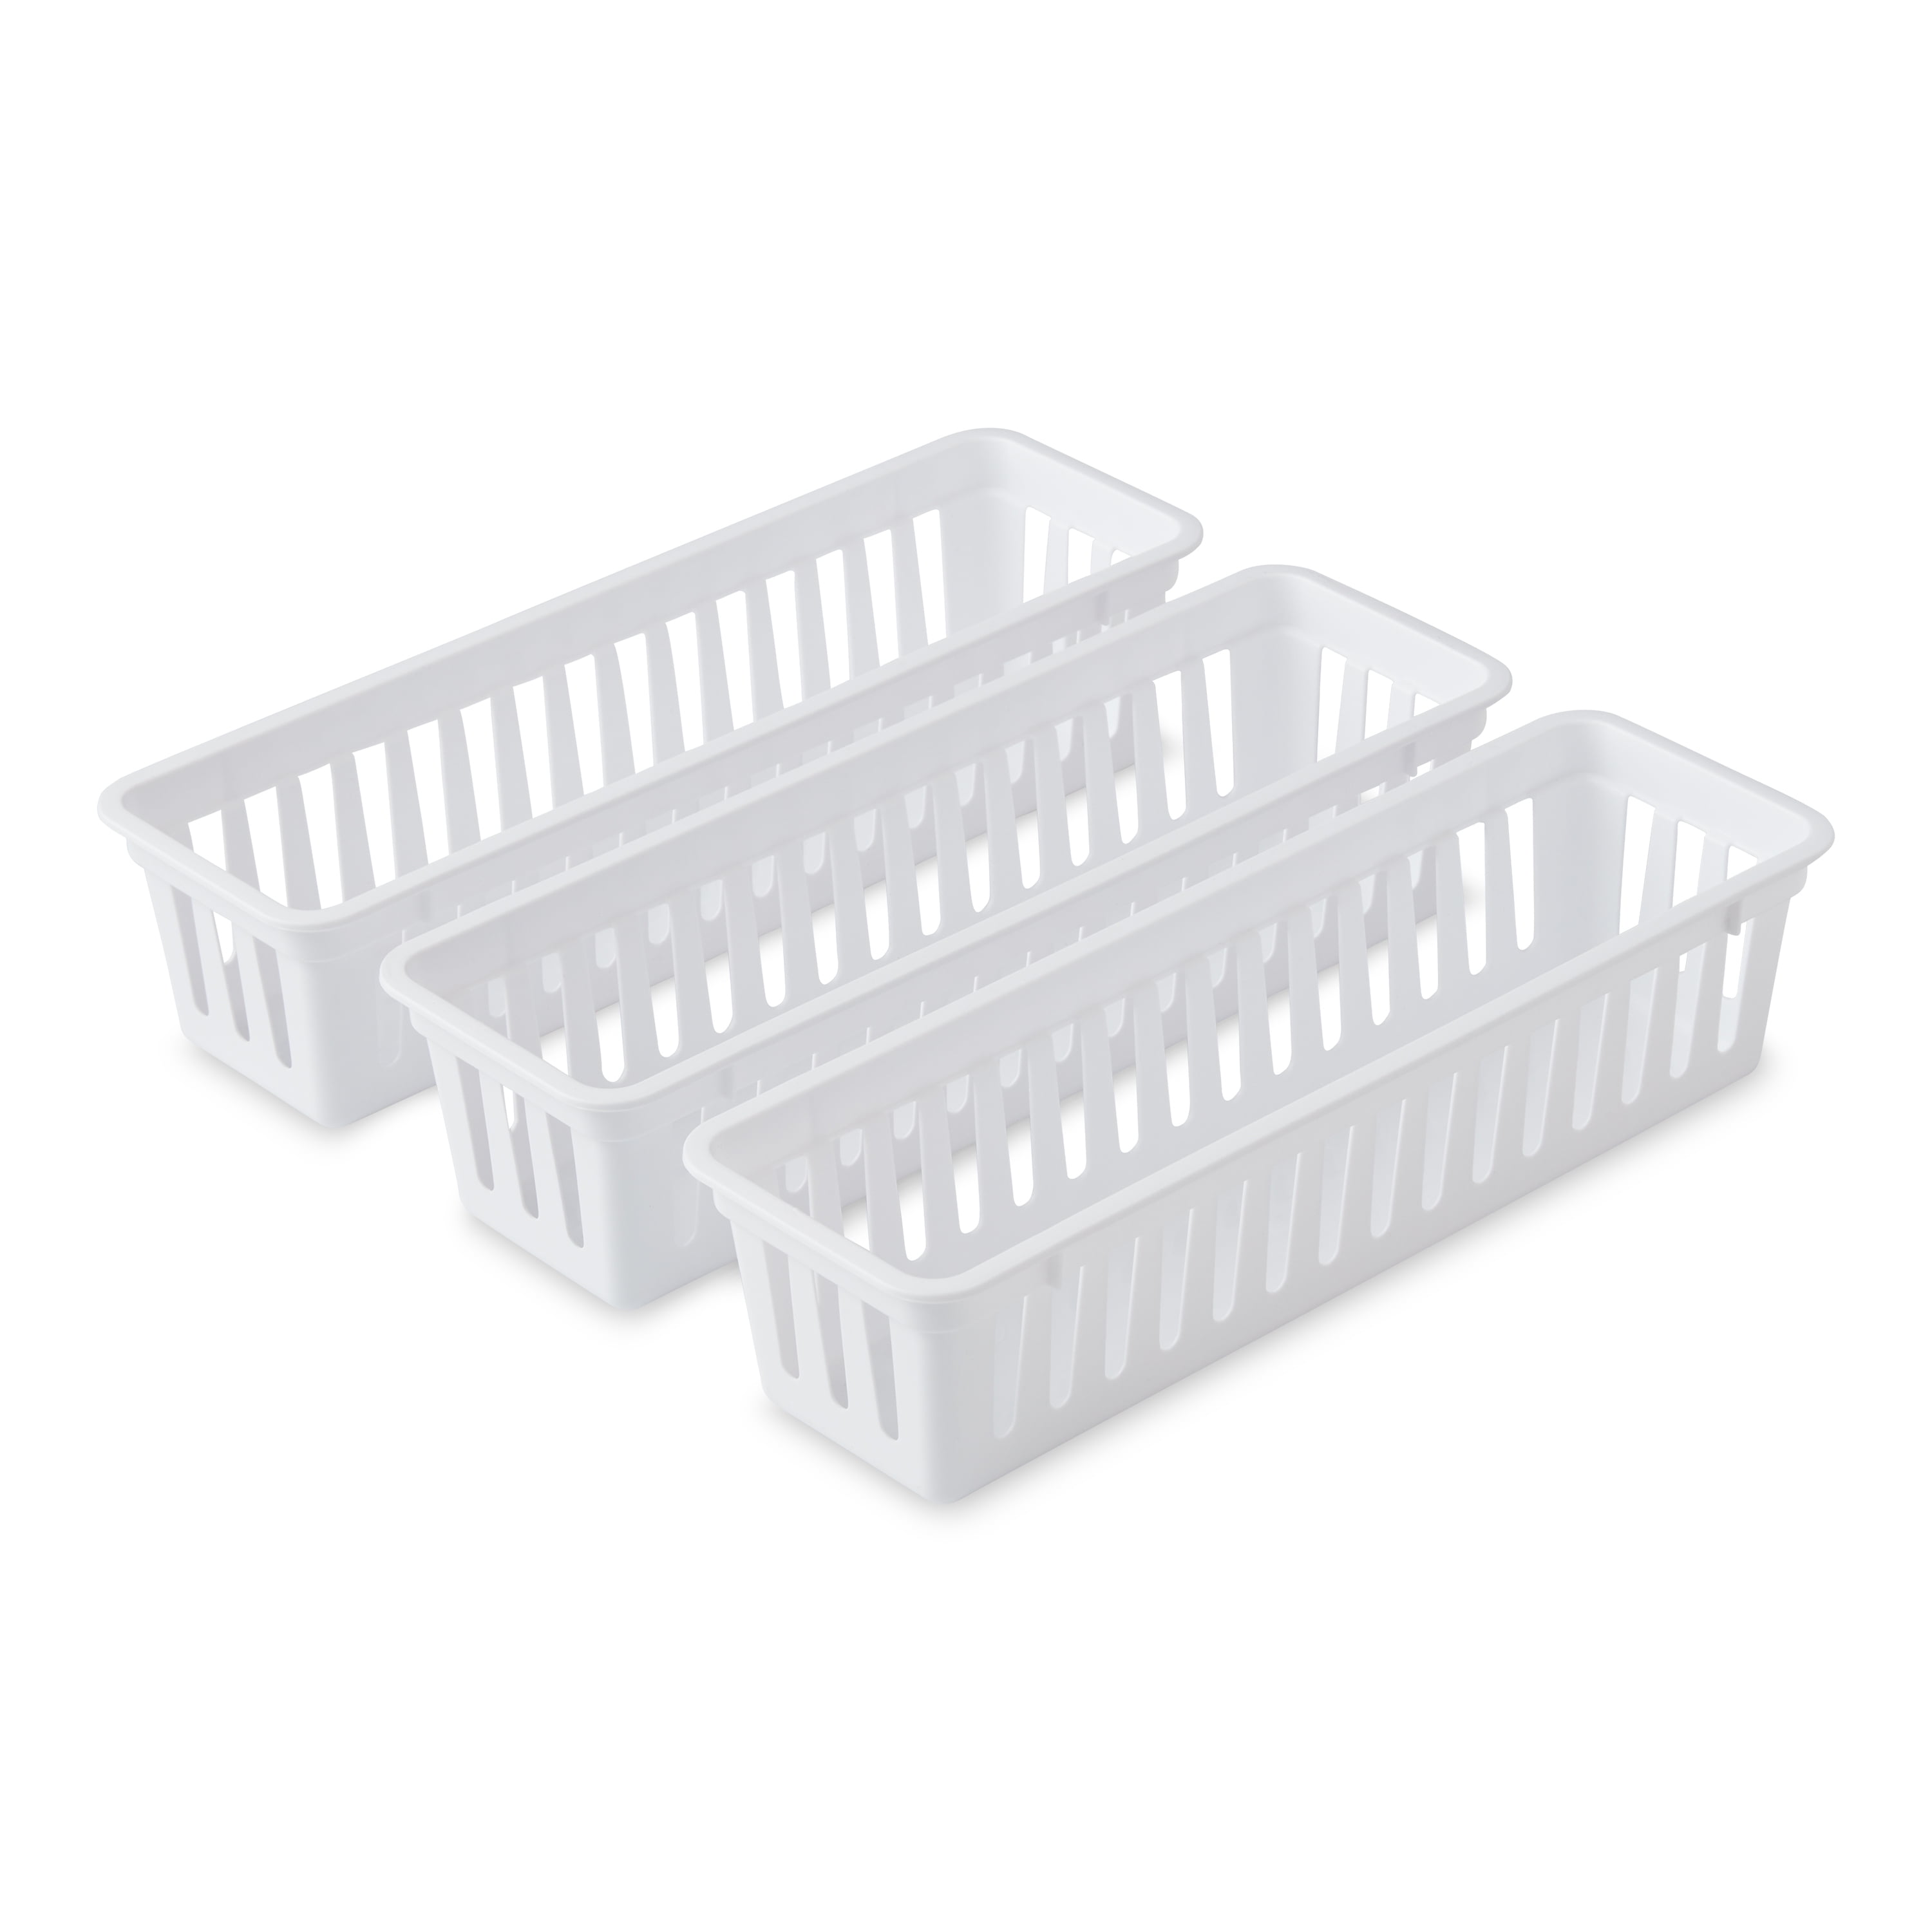 Mainstays Set of 3 Drawer Storage Narrow Utility Baskets, 10.3" x 3.1" x 2.4"